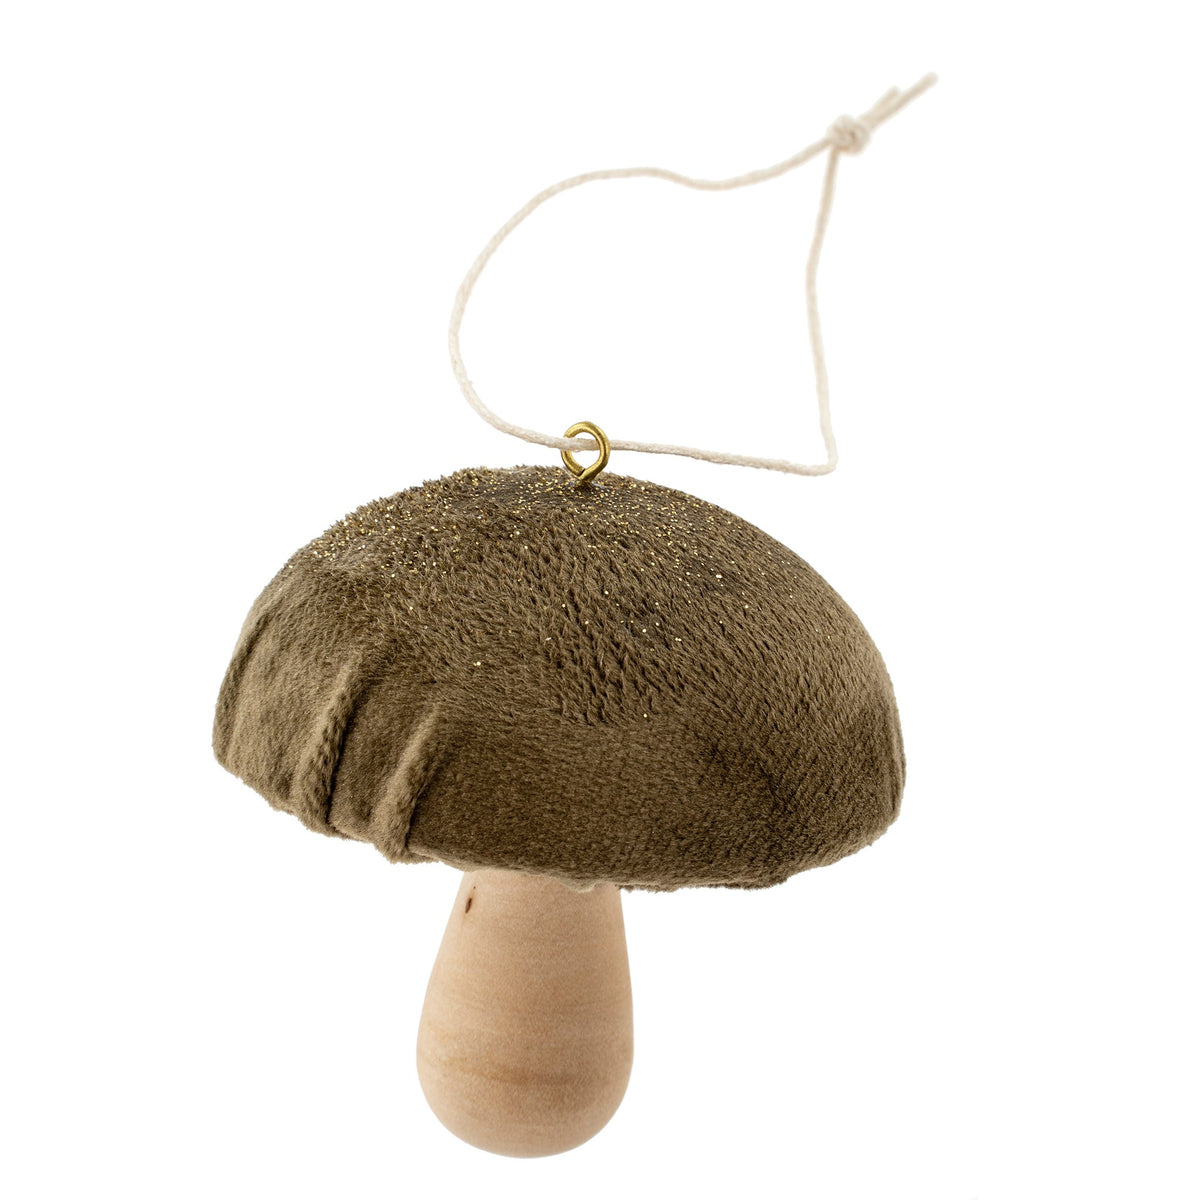 Mushroom Ornament - Olive Green